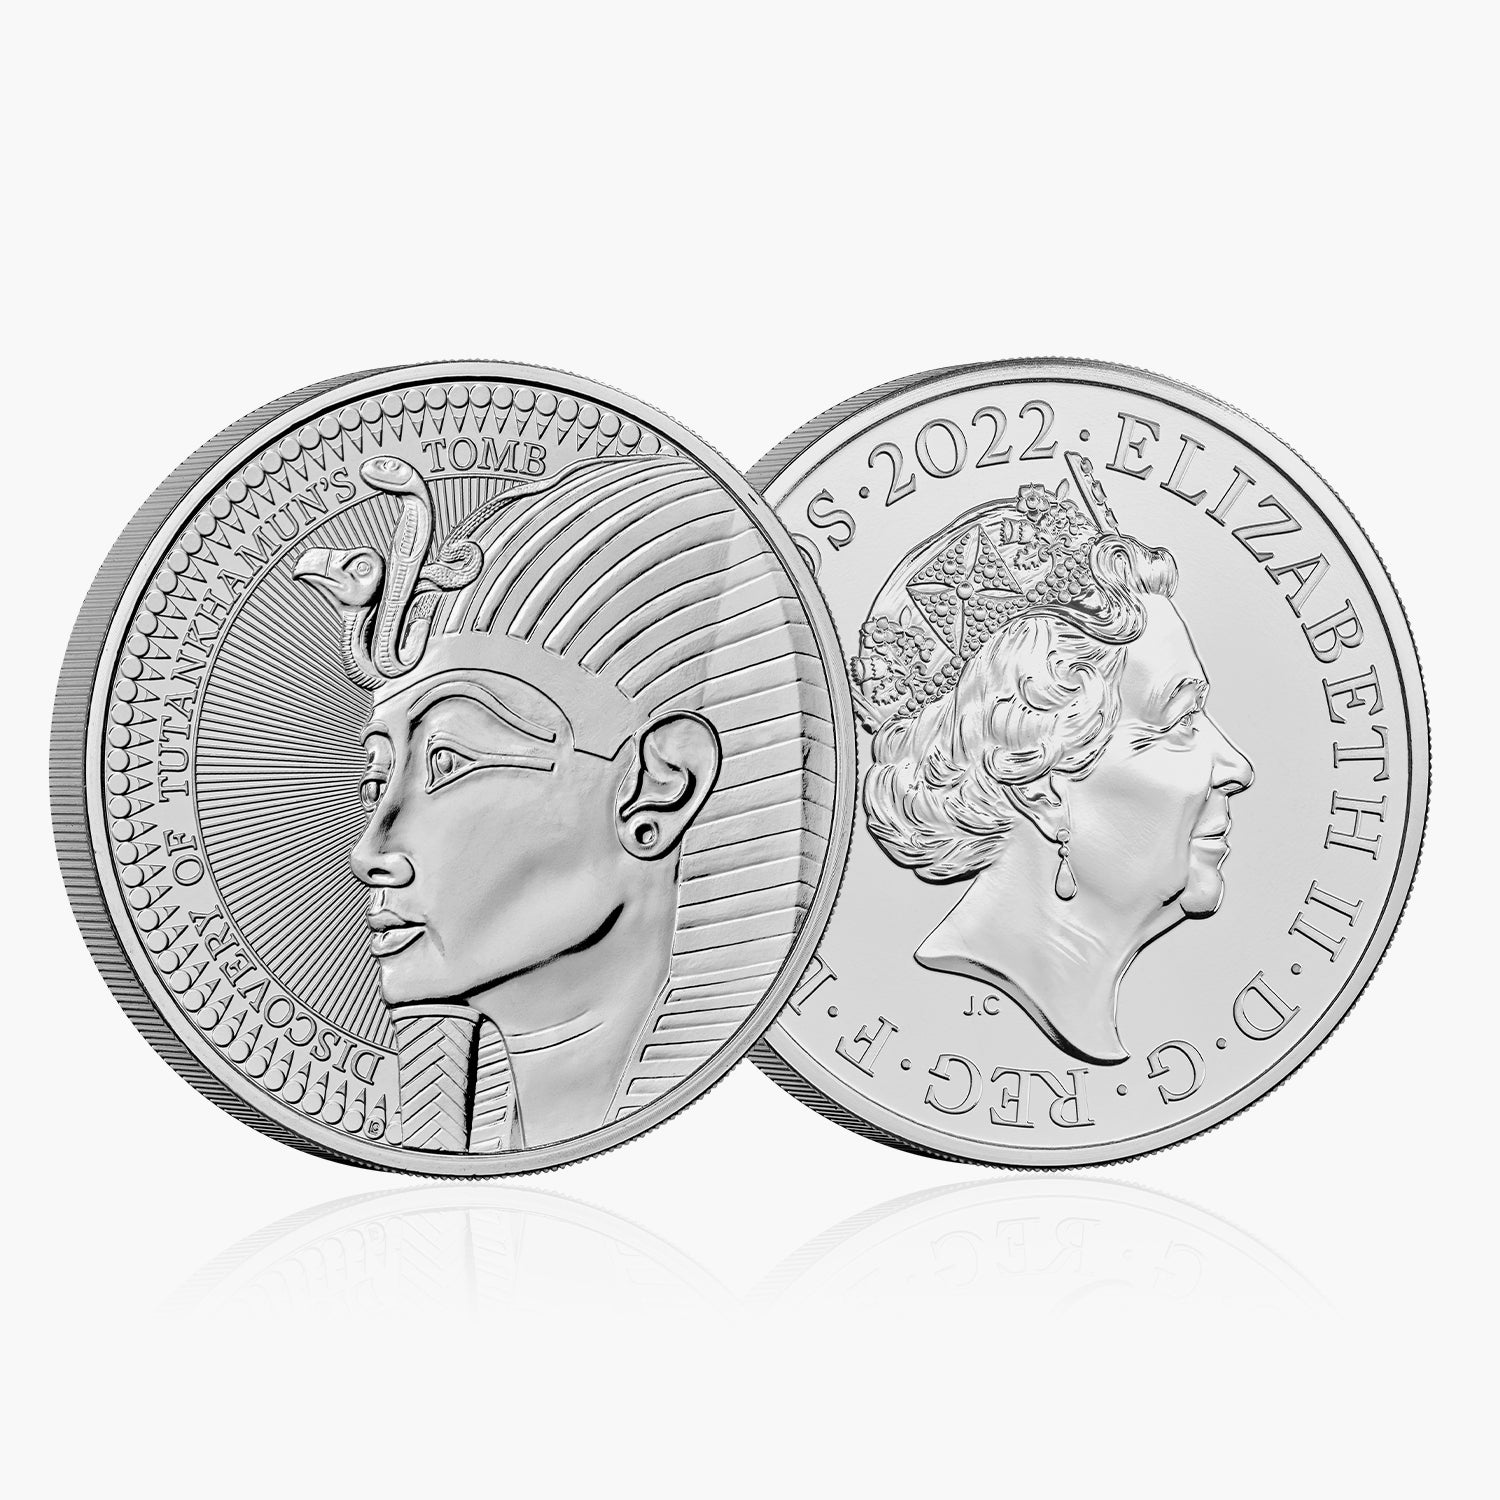 ツタンカーメンの墓発見 100 周年記念 2022 英国 £5 ブリリアント未流通コイン